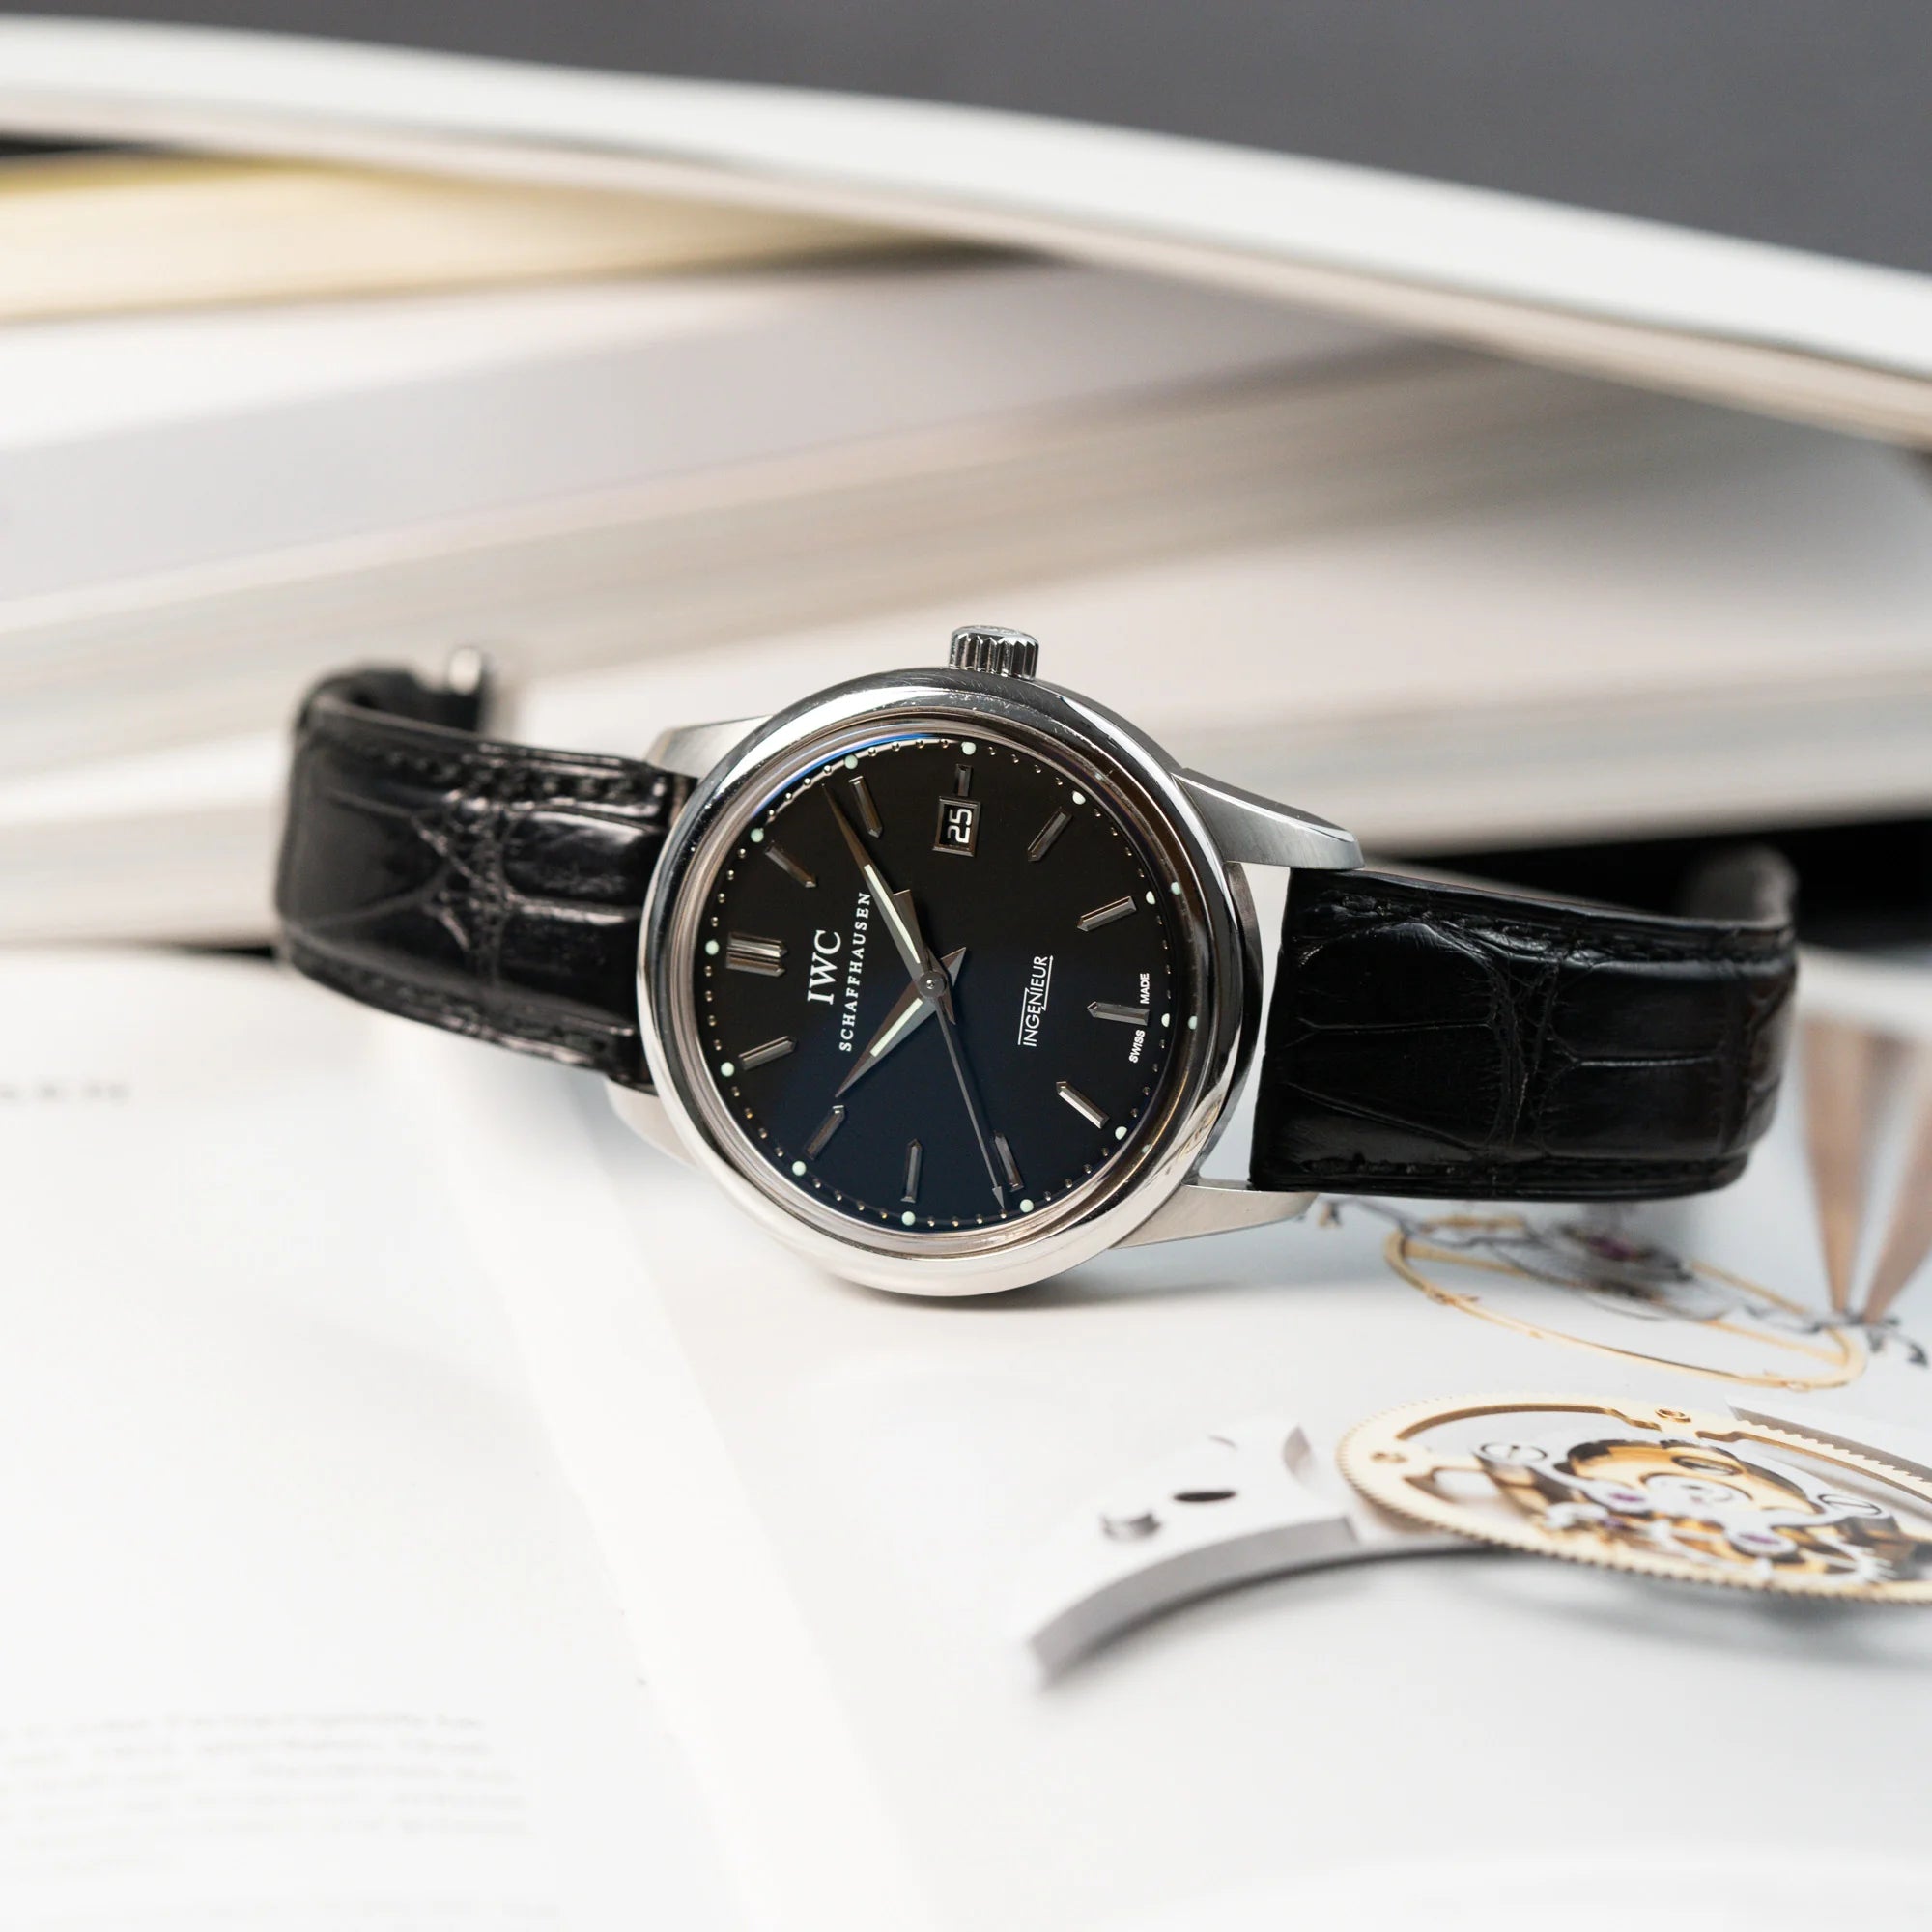 Produktfotografie der IWC Schaffhausen Uhr "Ingenieur" mit der Referenz IW323301 mit schwarzem Zifferblatt